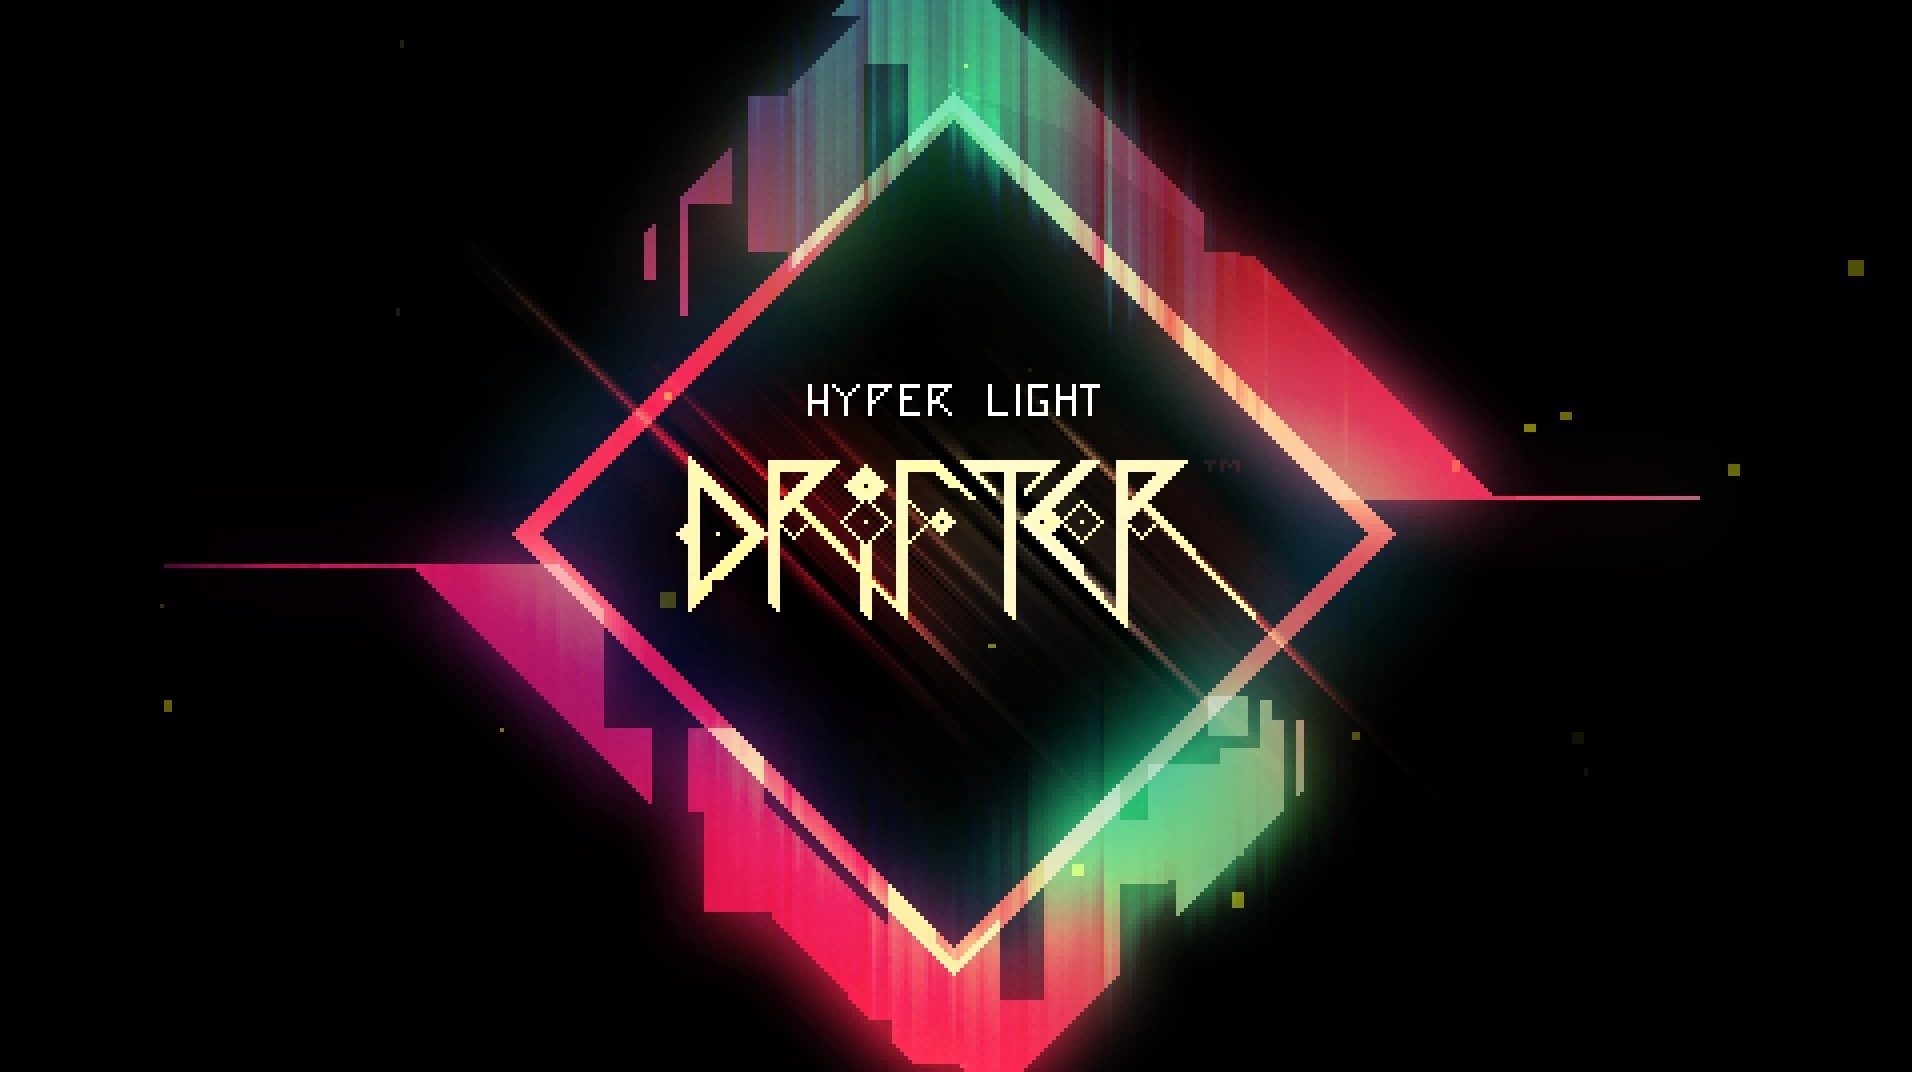 Video Game Hyper Light Drifter HD Wallpaper | Background Image